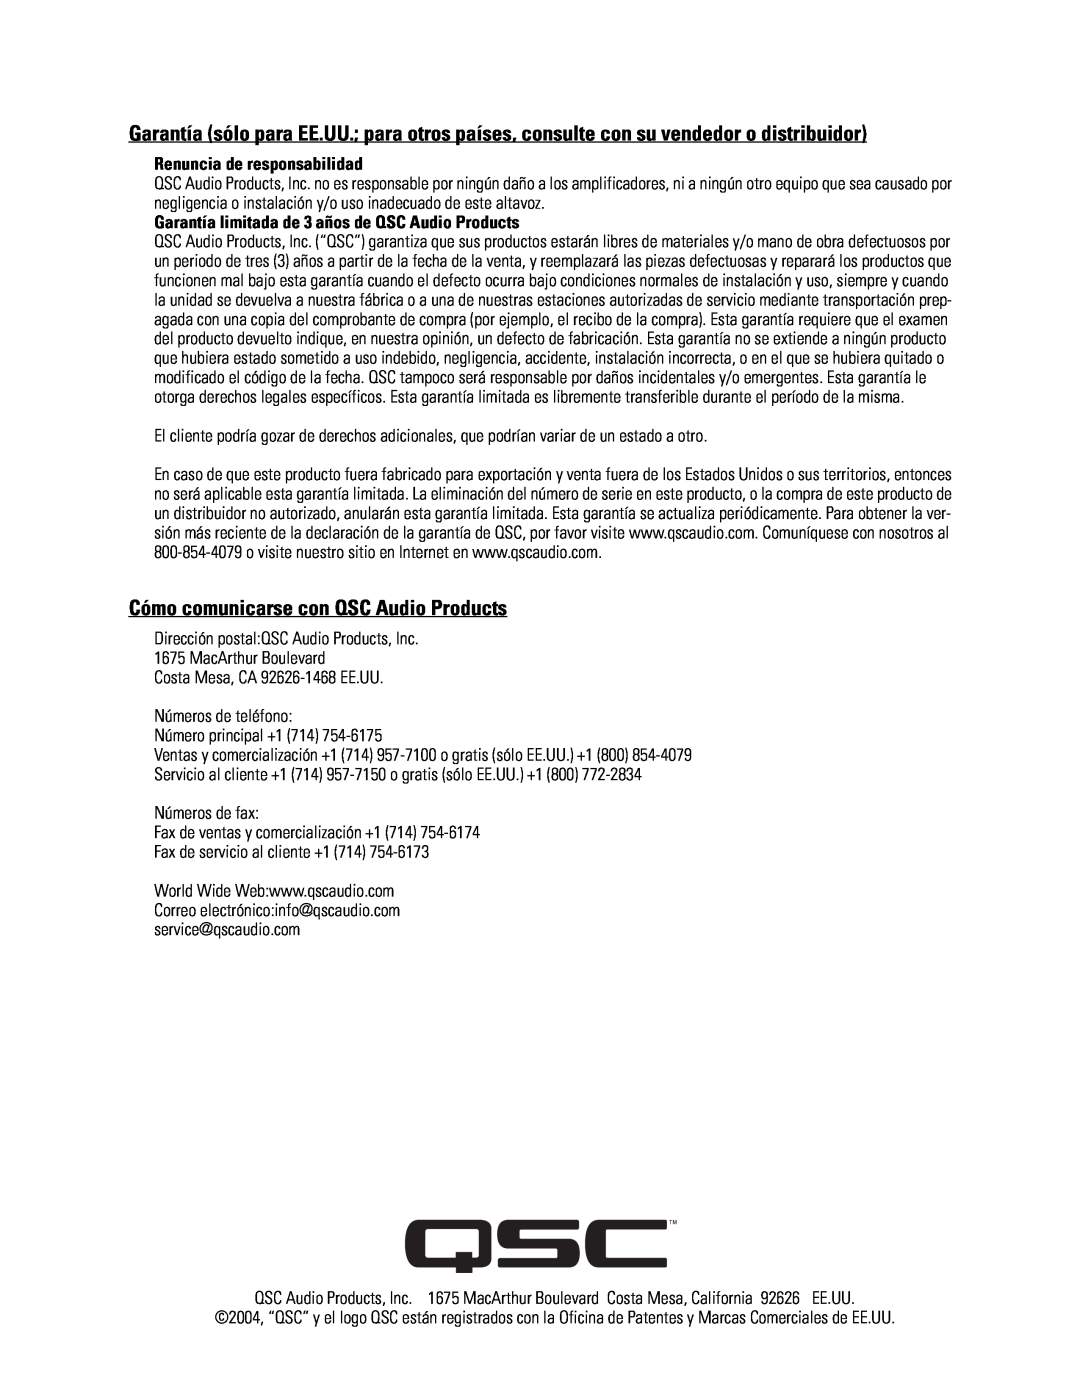 QSC Audio SC-322 specifications Cómo comunicarse con QSC Audio Products, Renuncia de responsabilidad 